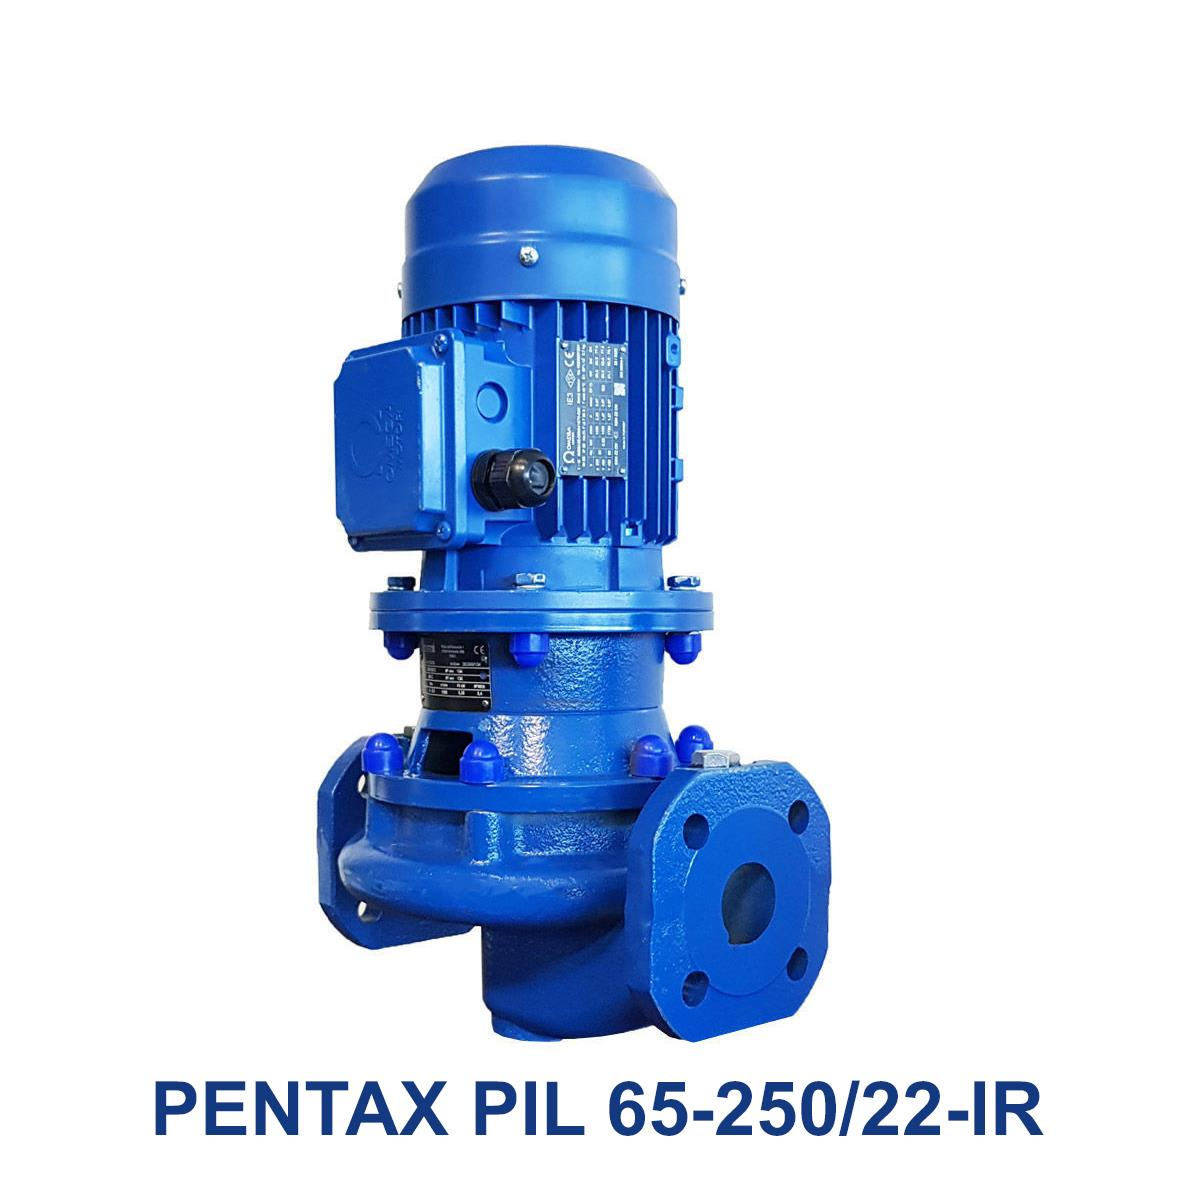 PENTAX-PIL-65-250-22-IR